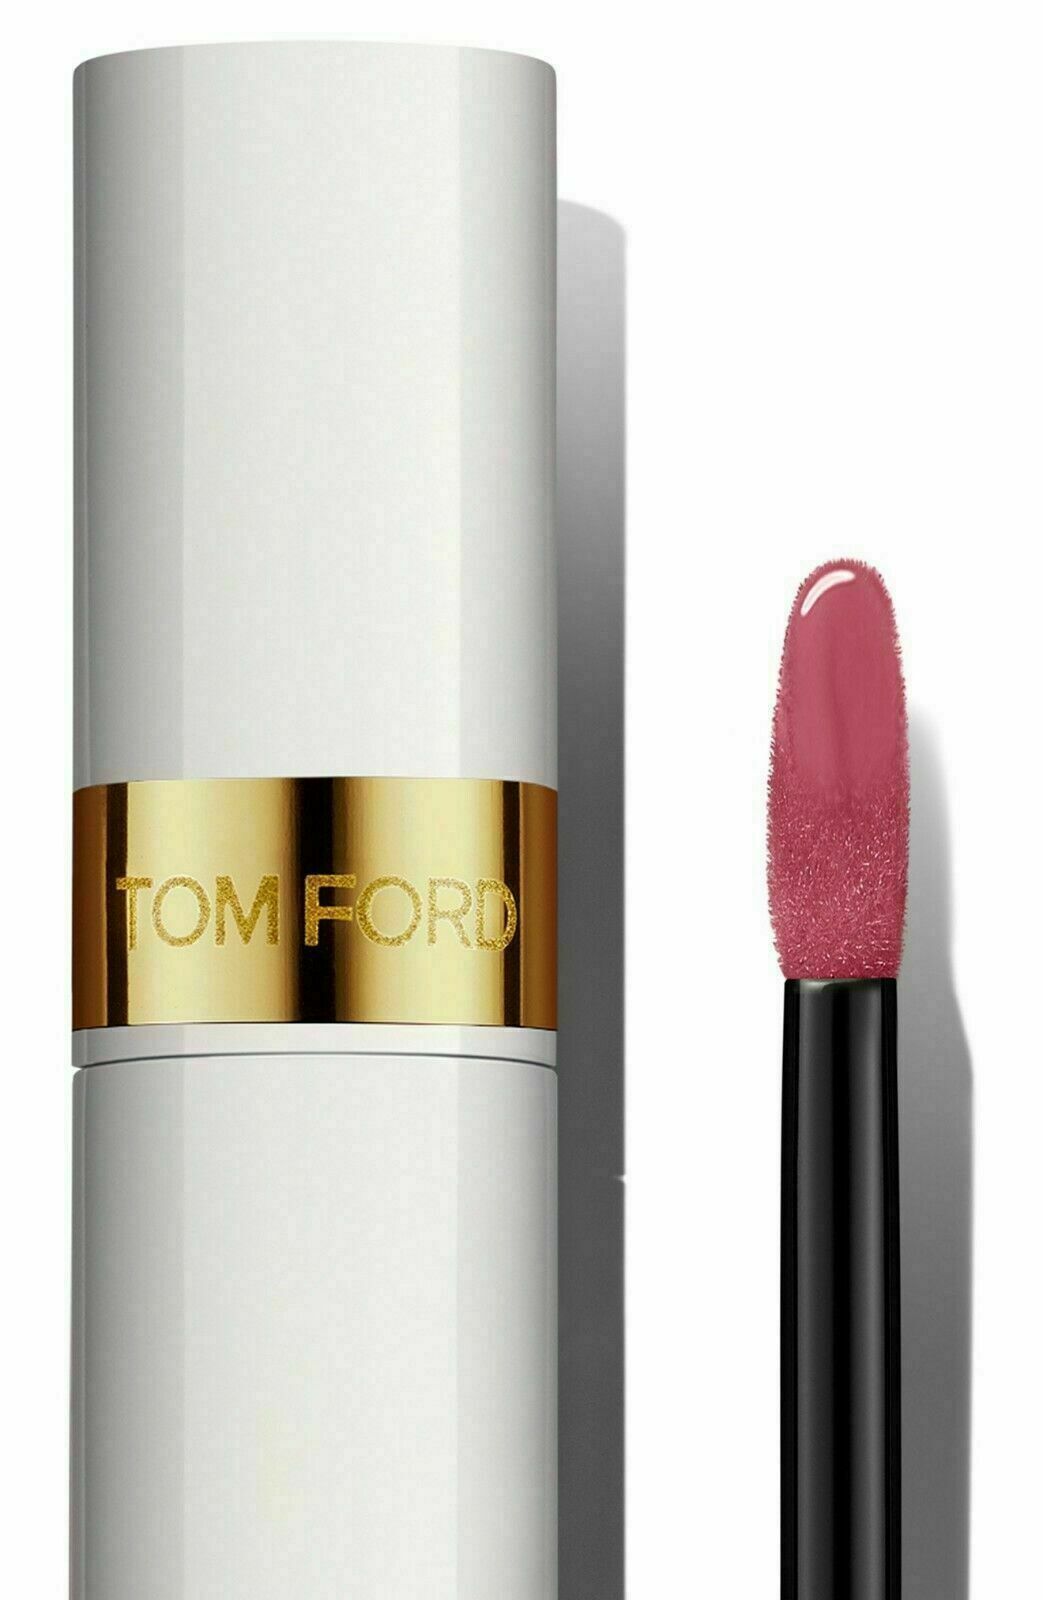 Tom Ford Soleil Lip Lacquer Liquid Tint Lip Gloss CARA MIA 03 PINK Cream FS .1oz - $34.50